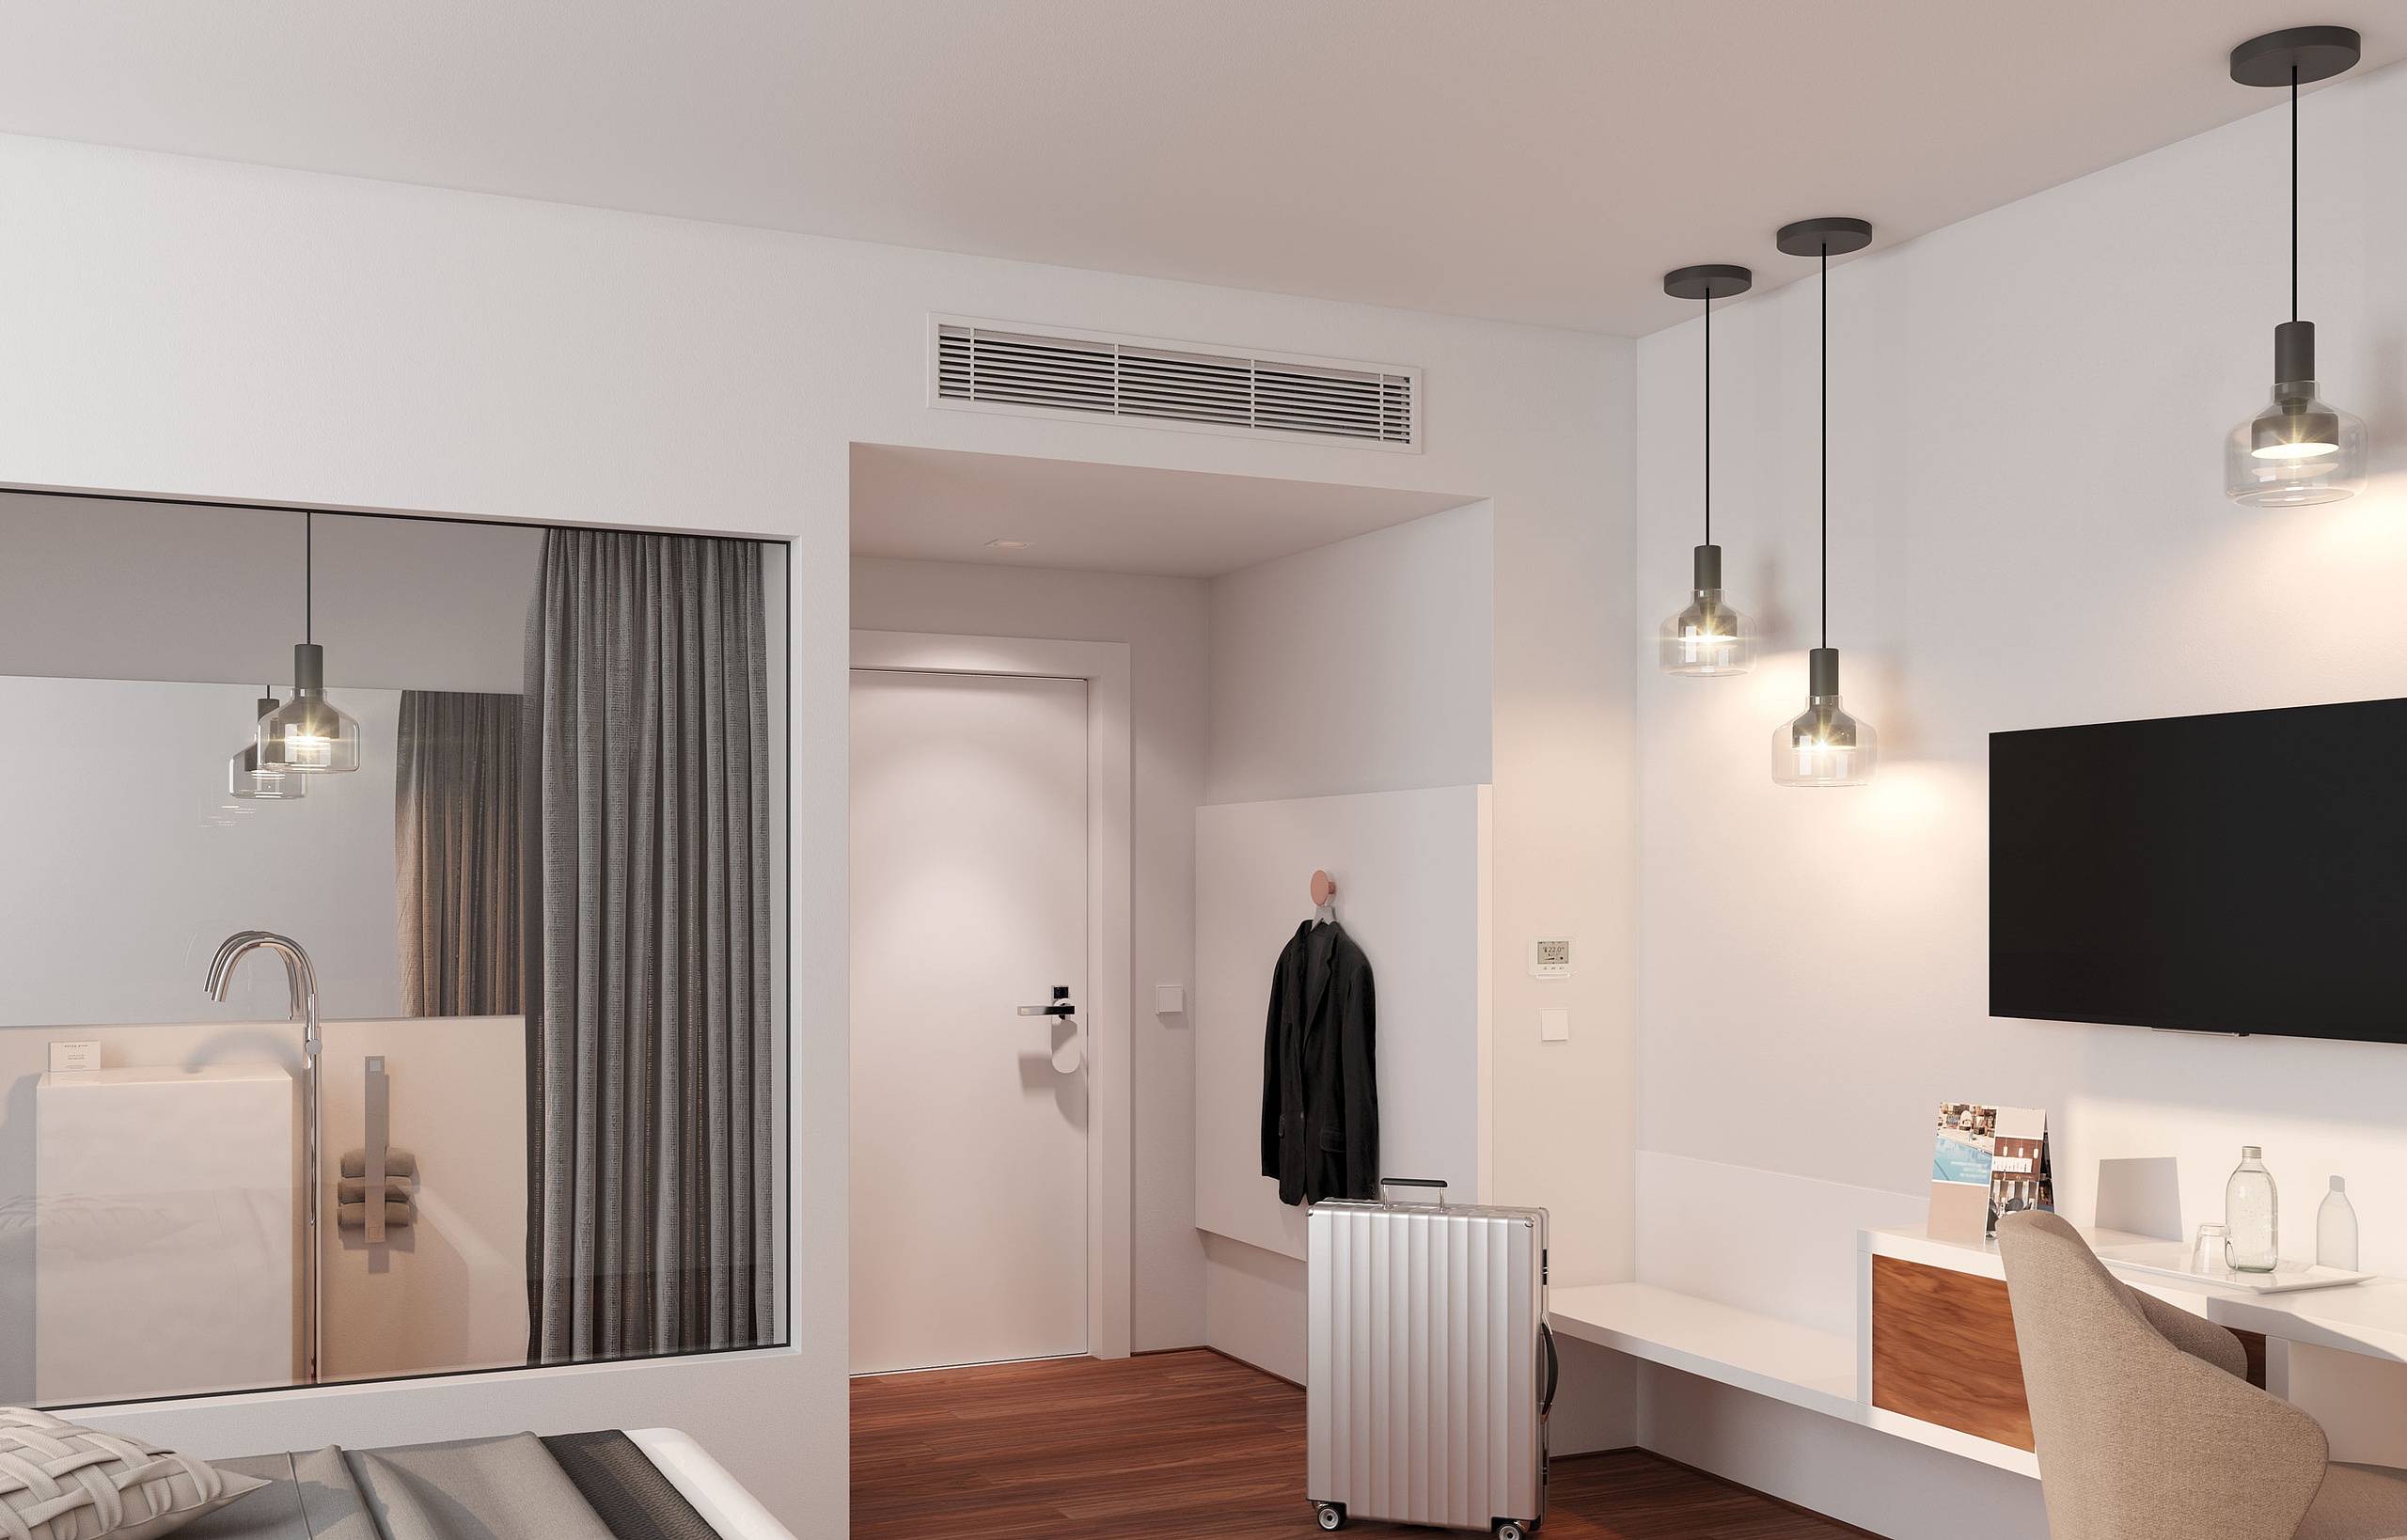 Фанкойлы Arbonia – канальное оборудование в качестве решения для отелей и гостиничных номеров